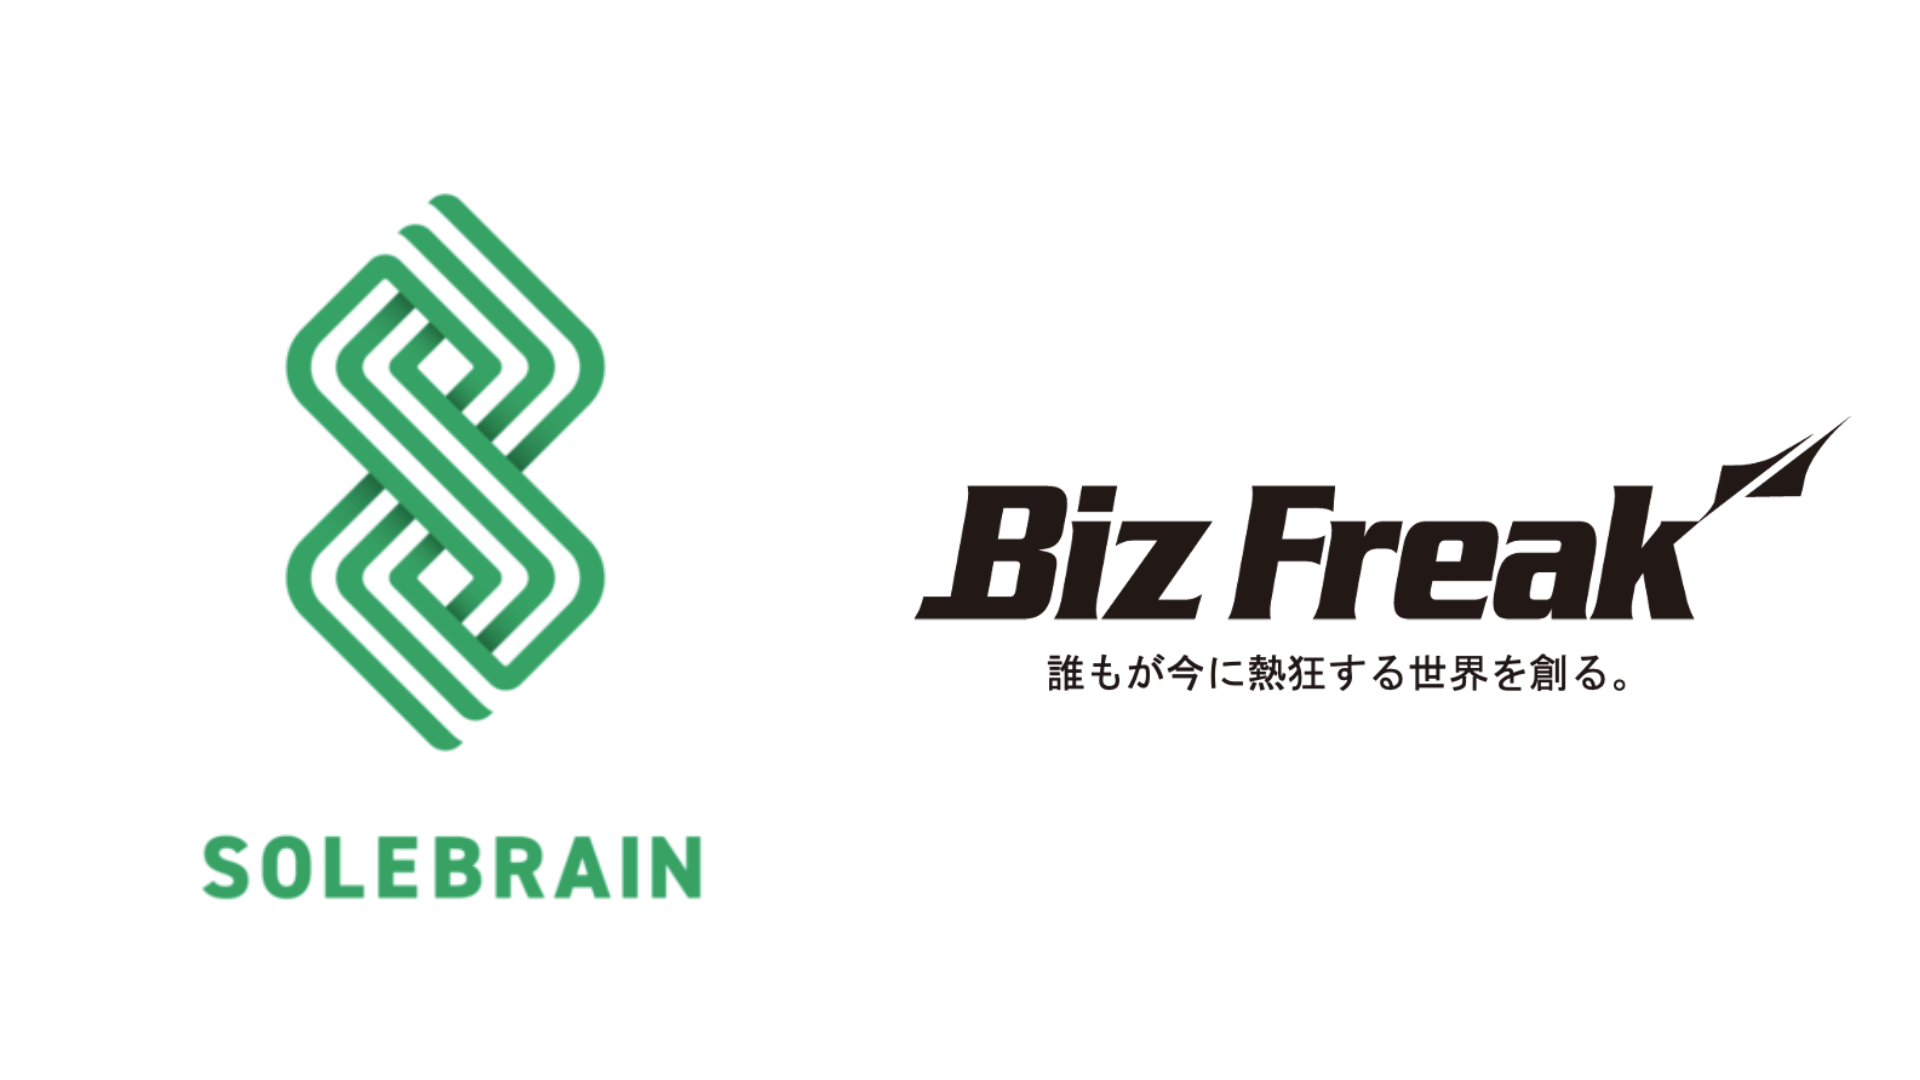 株式会社BizFreak、株式会社ソルブレインと資本業務提携